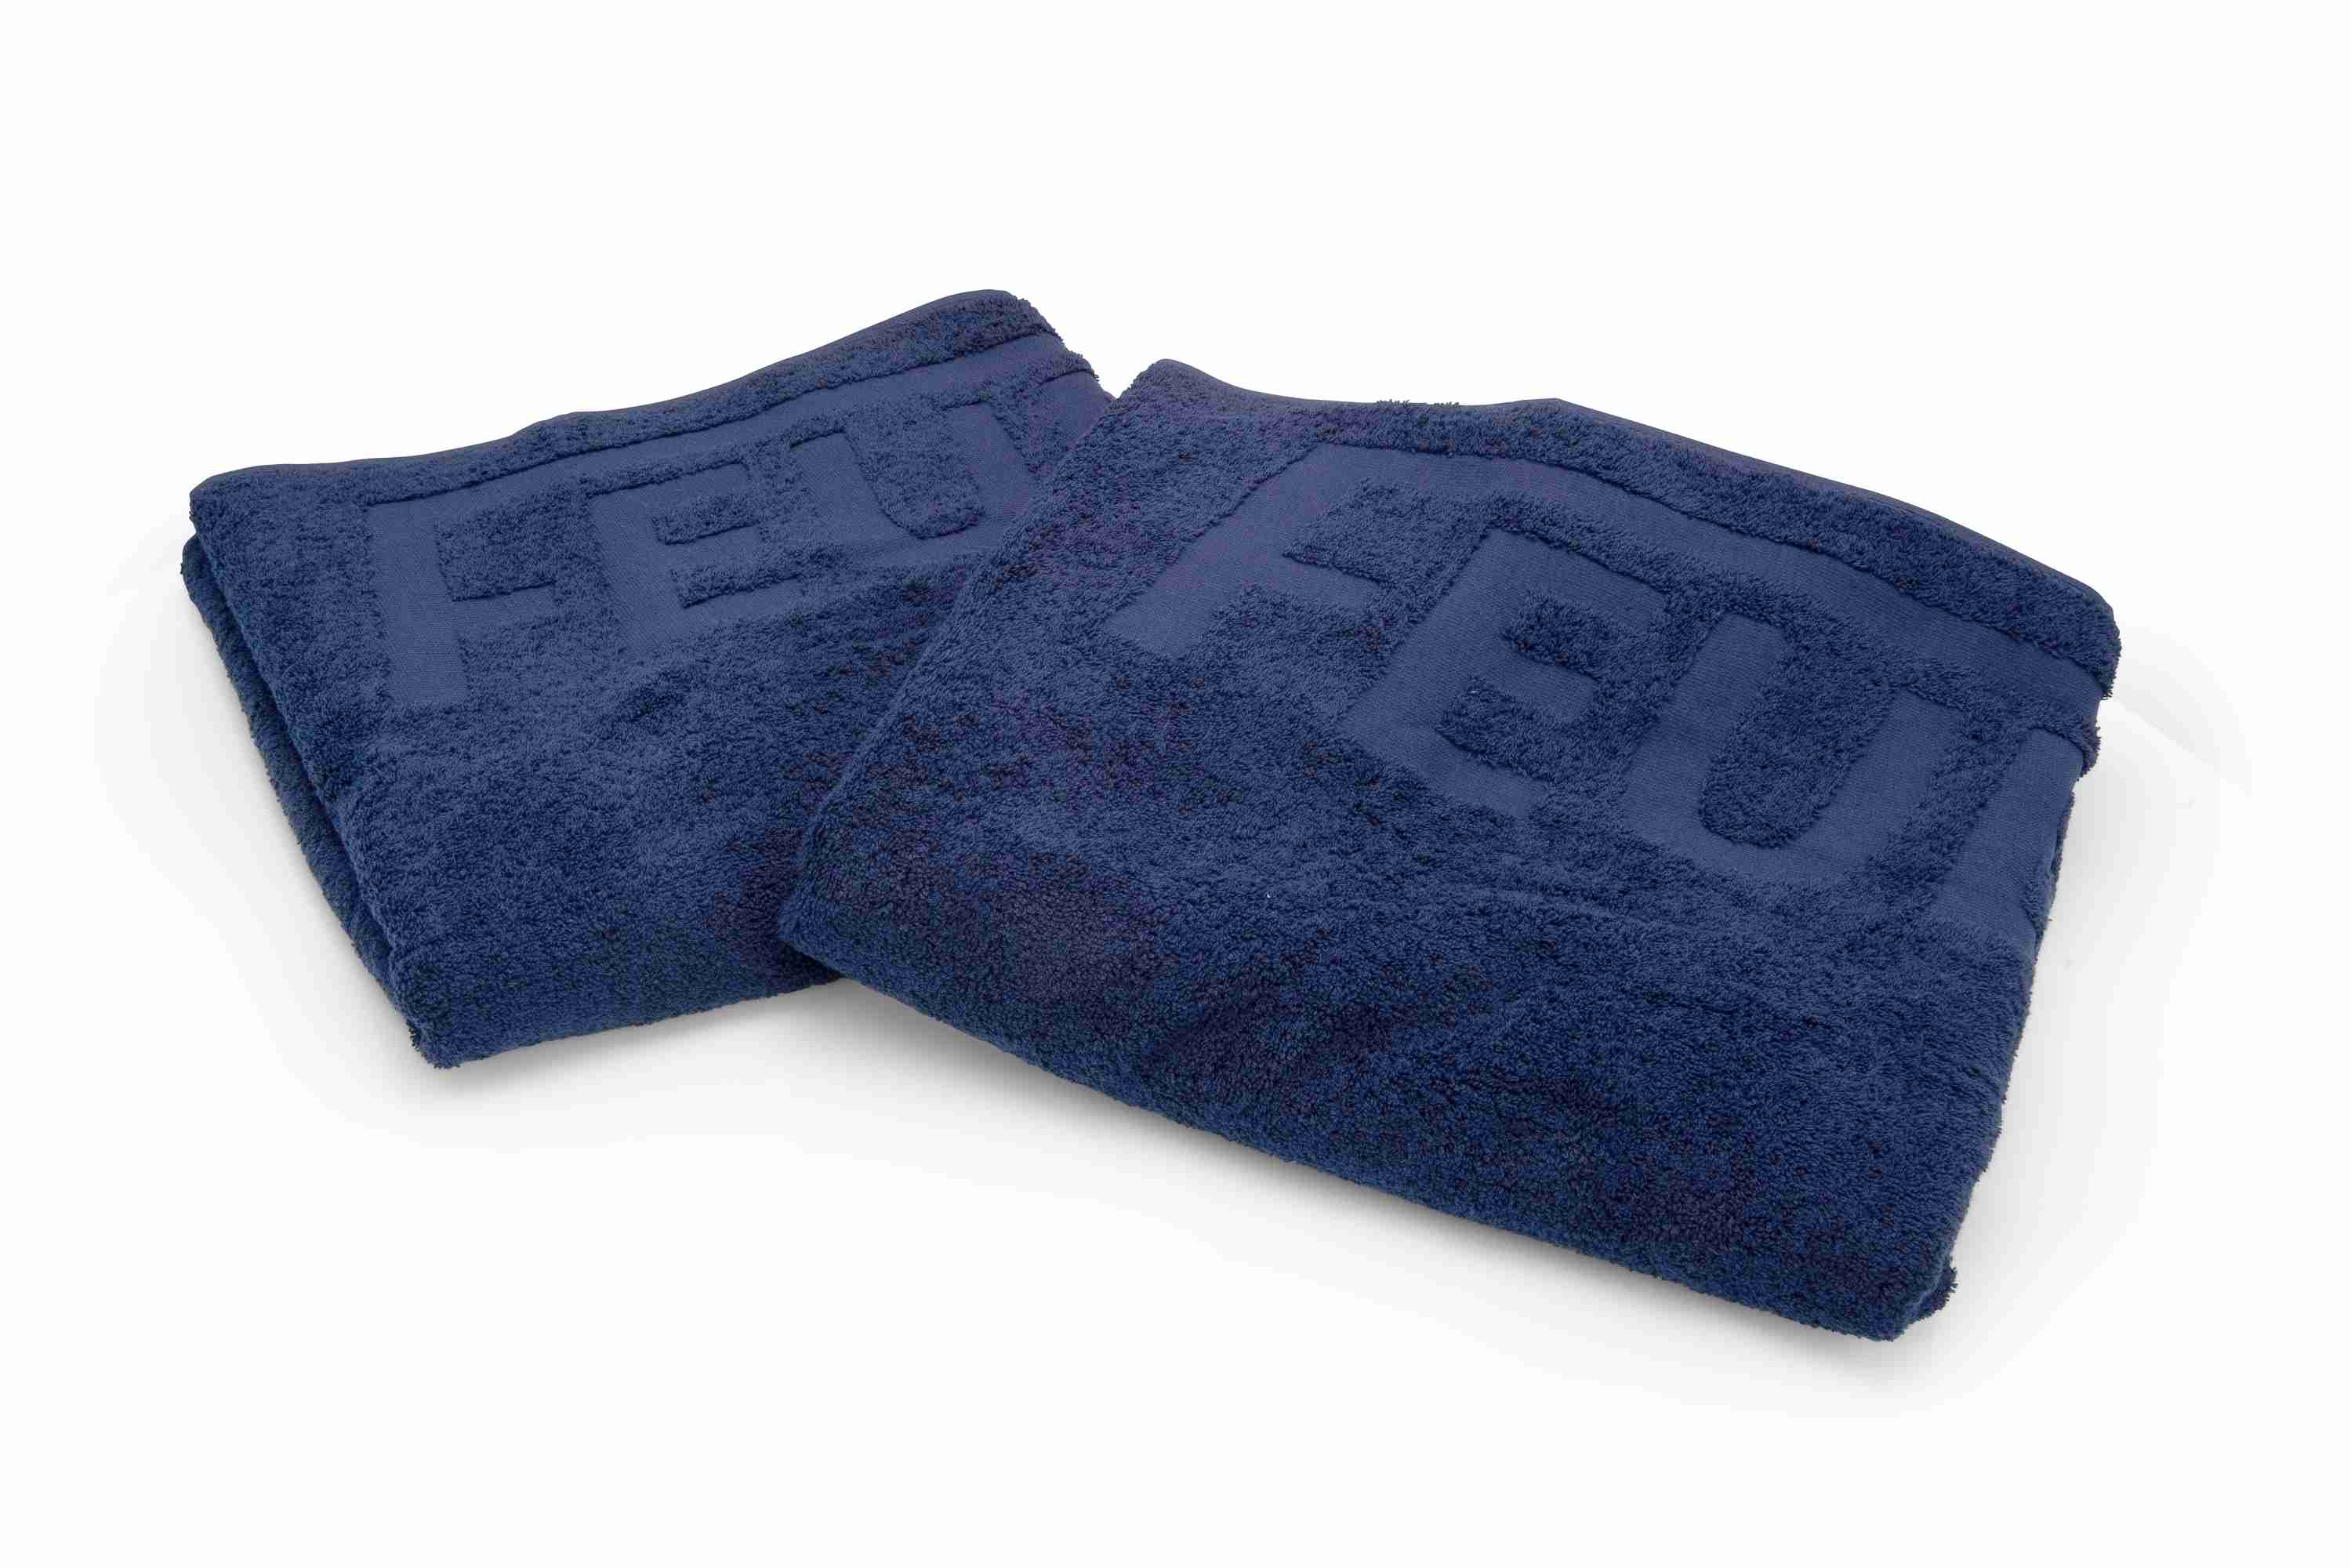 Premium Duschtuch mit FEUERWEHR Einwebung marineblau 140x70cm 100% Baumwolle, sehr flauschig, deutsche Markenqualität